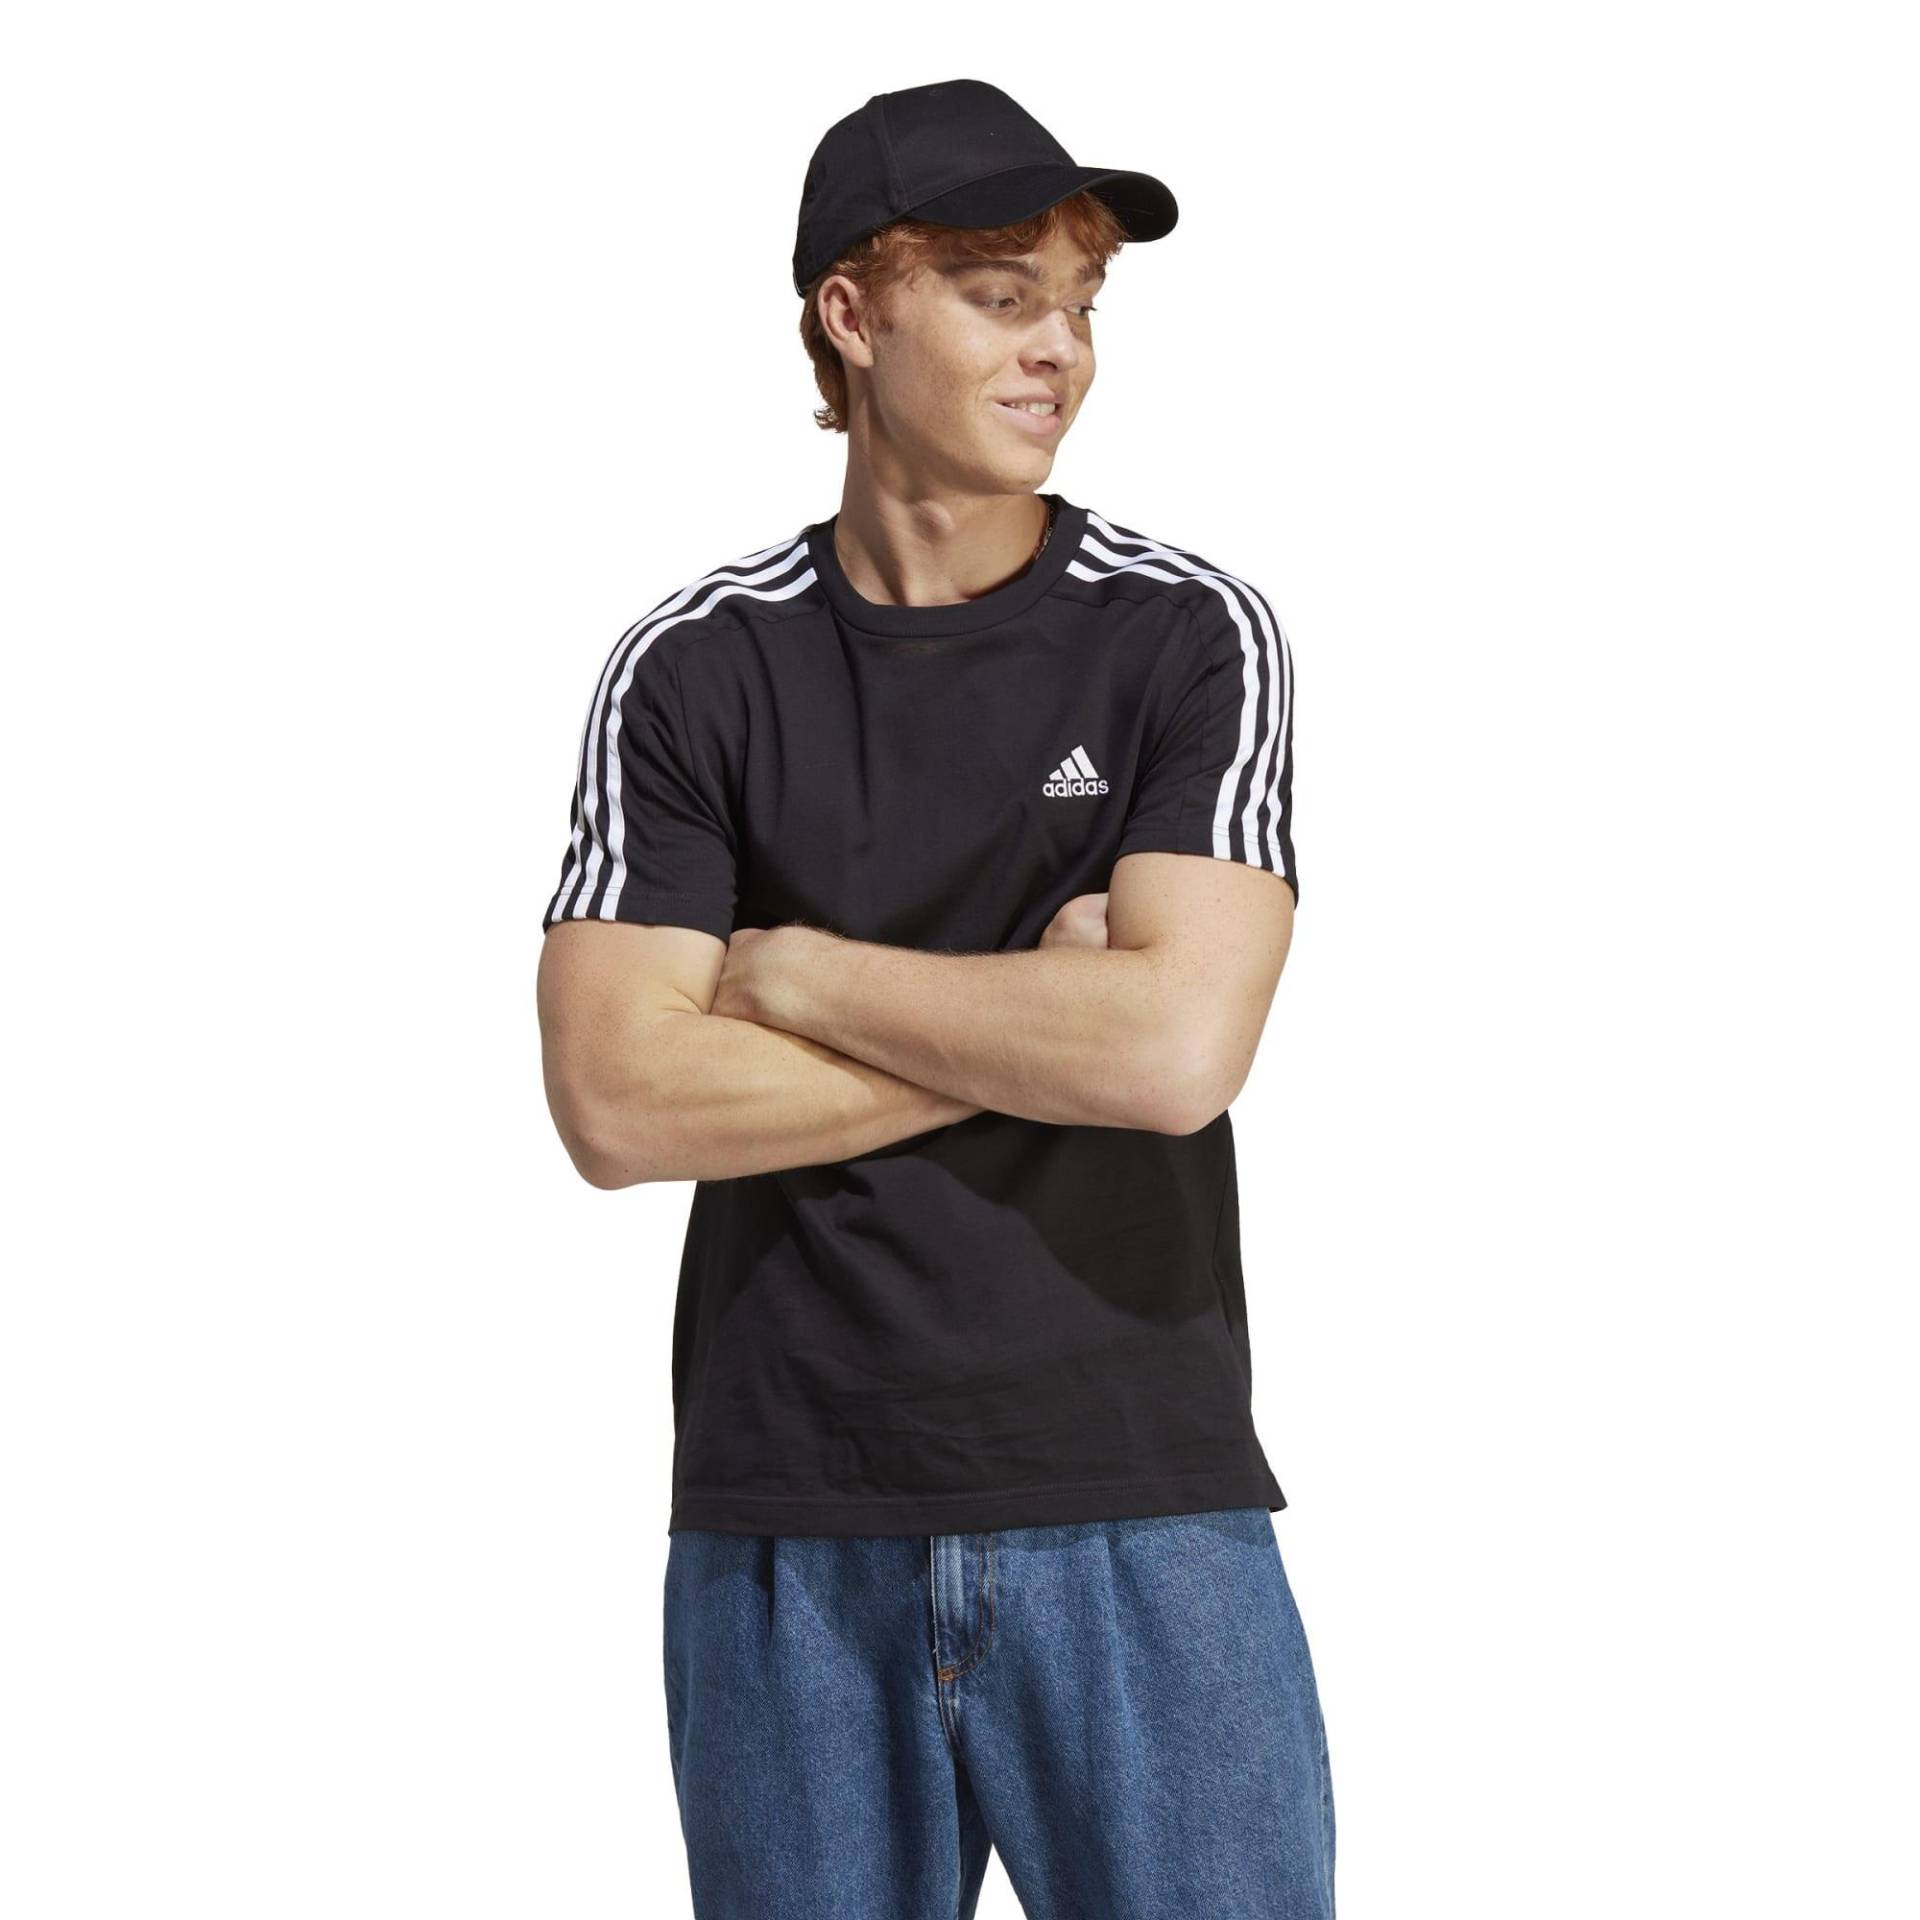 Adidas T-Shirt Herren - schwarz von Adidas